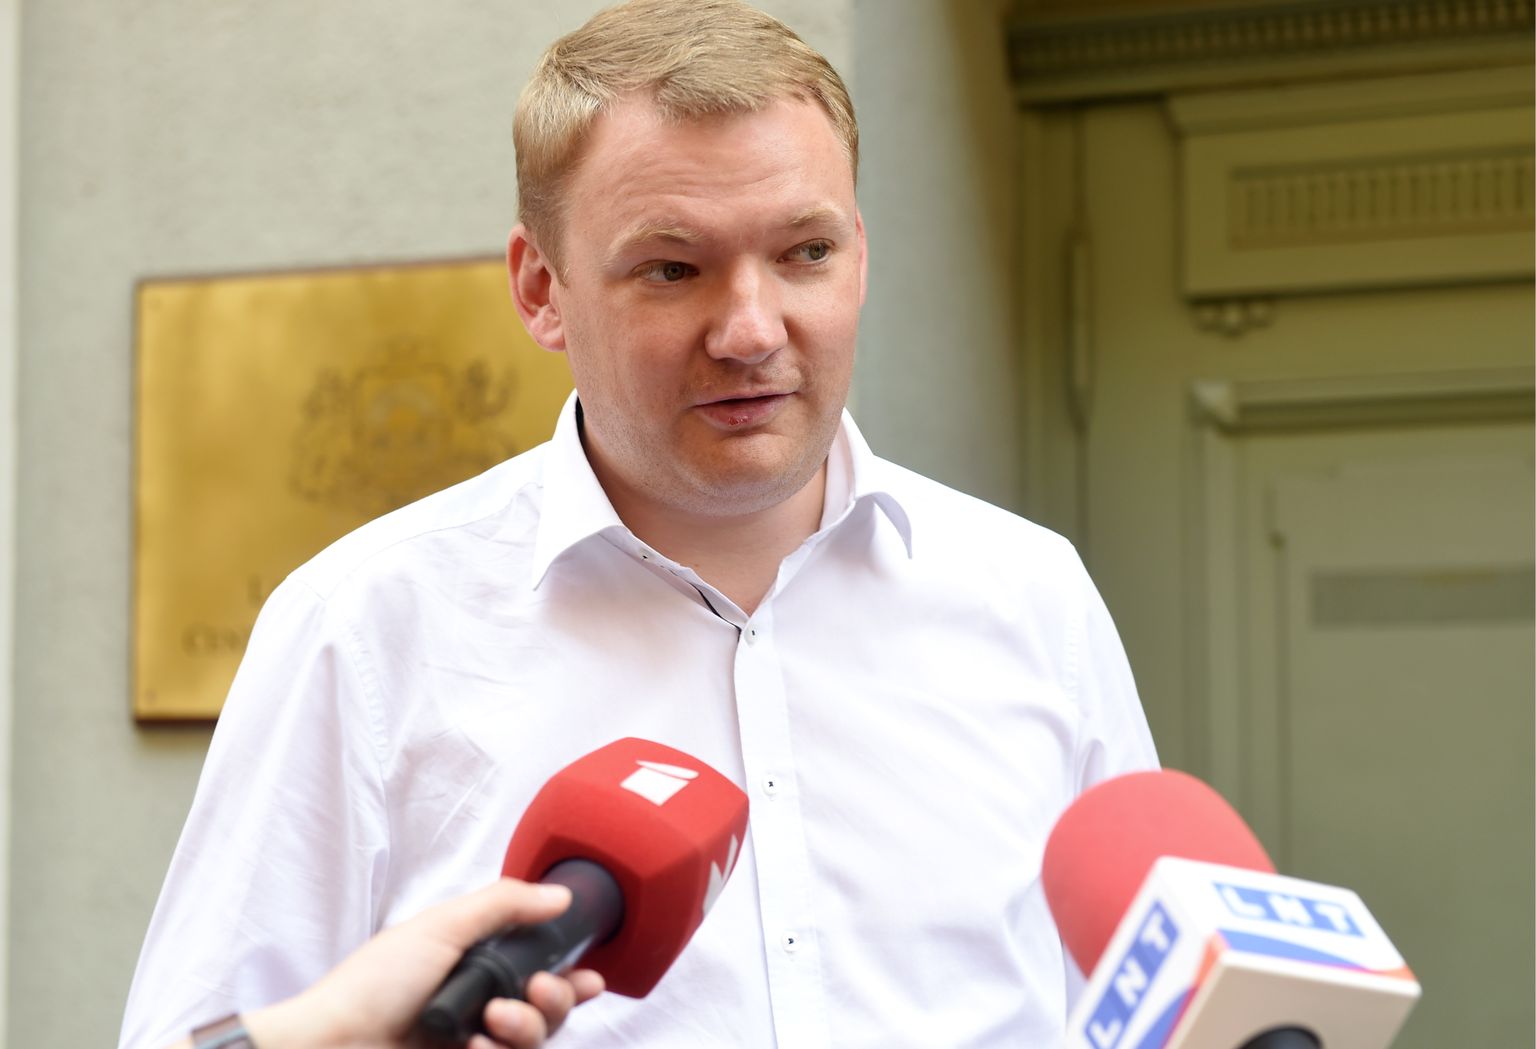 Latvijas Reģionu apvienības valdes loceklis, premjera amata kandidāts Edvards Smiltēns atbild uz žurnālistu jautājumiem pirms kandidātu sarakstu iesniegšanas 13. Saeimas vēlēšanām.